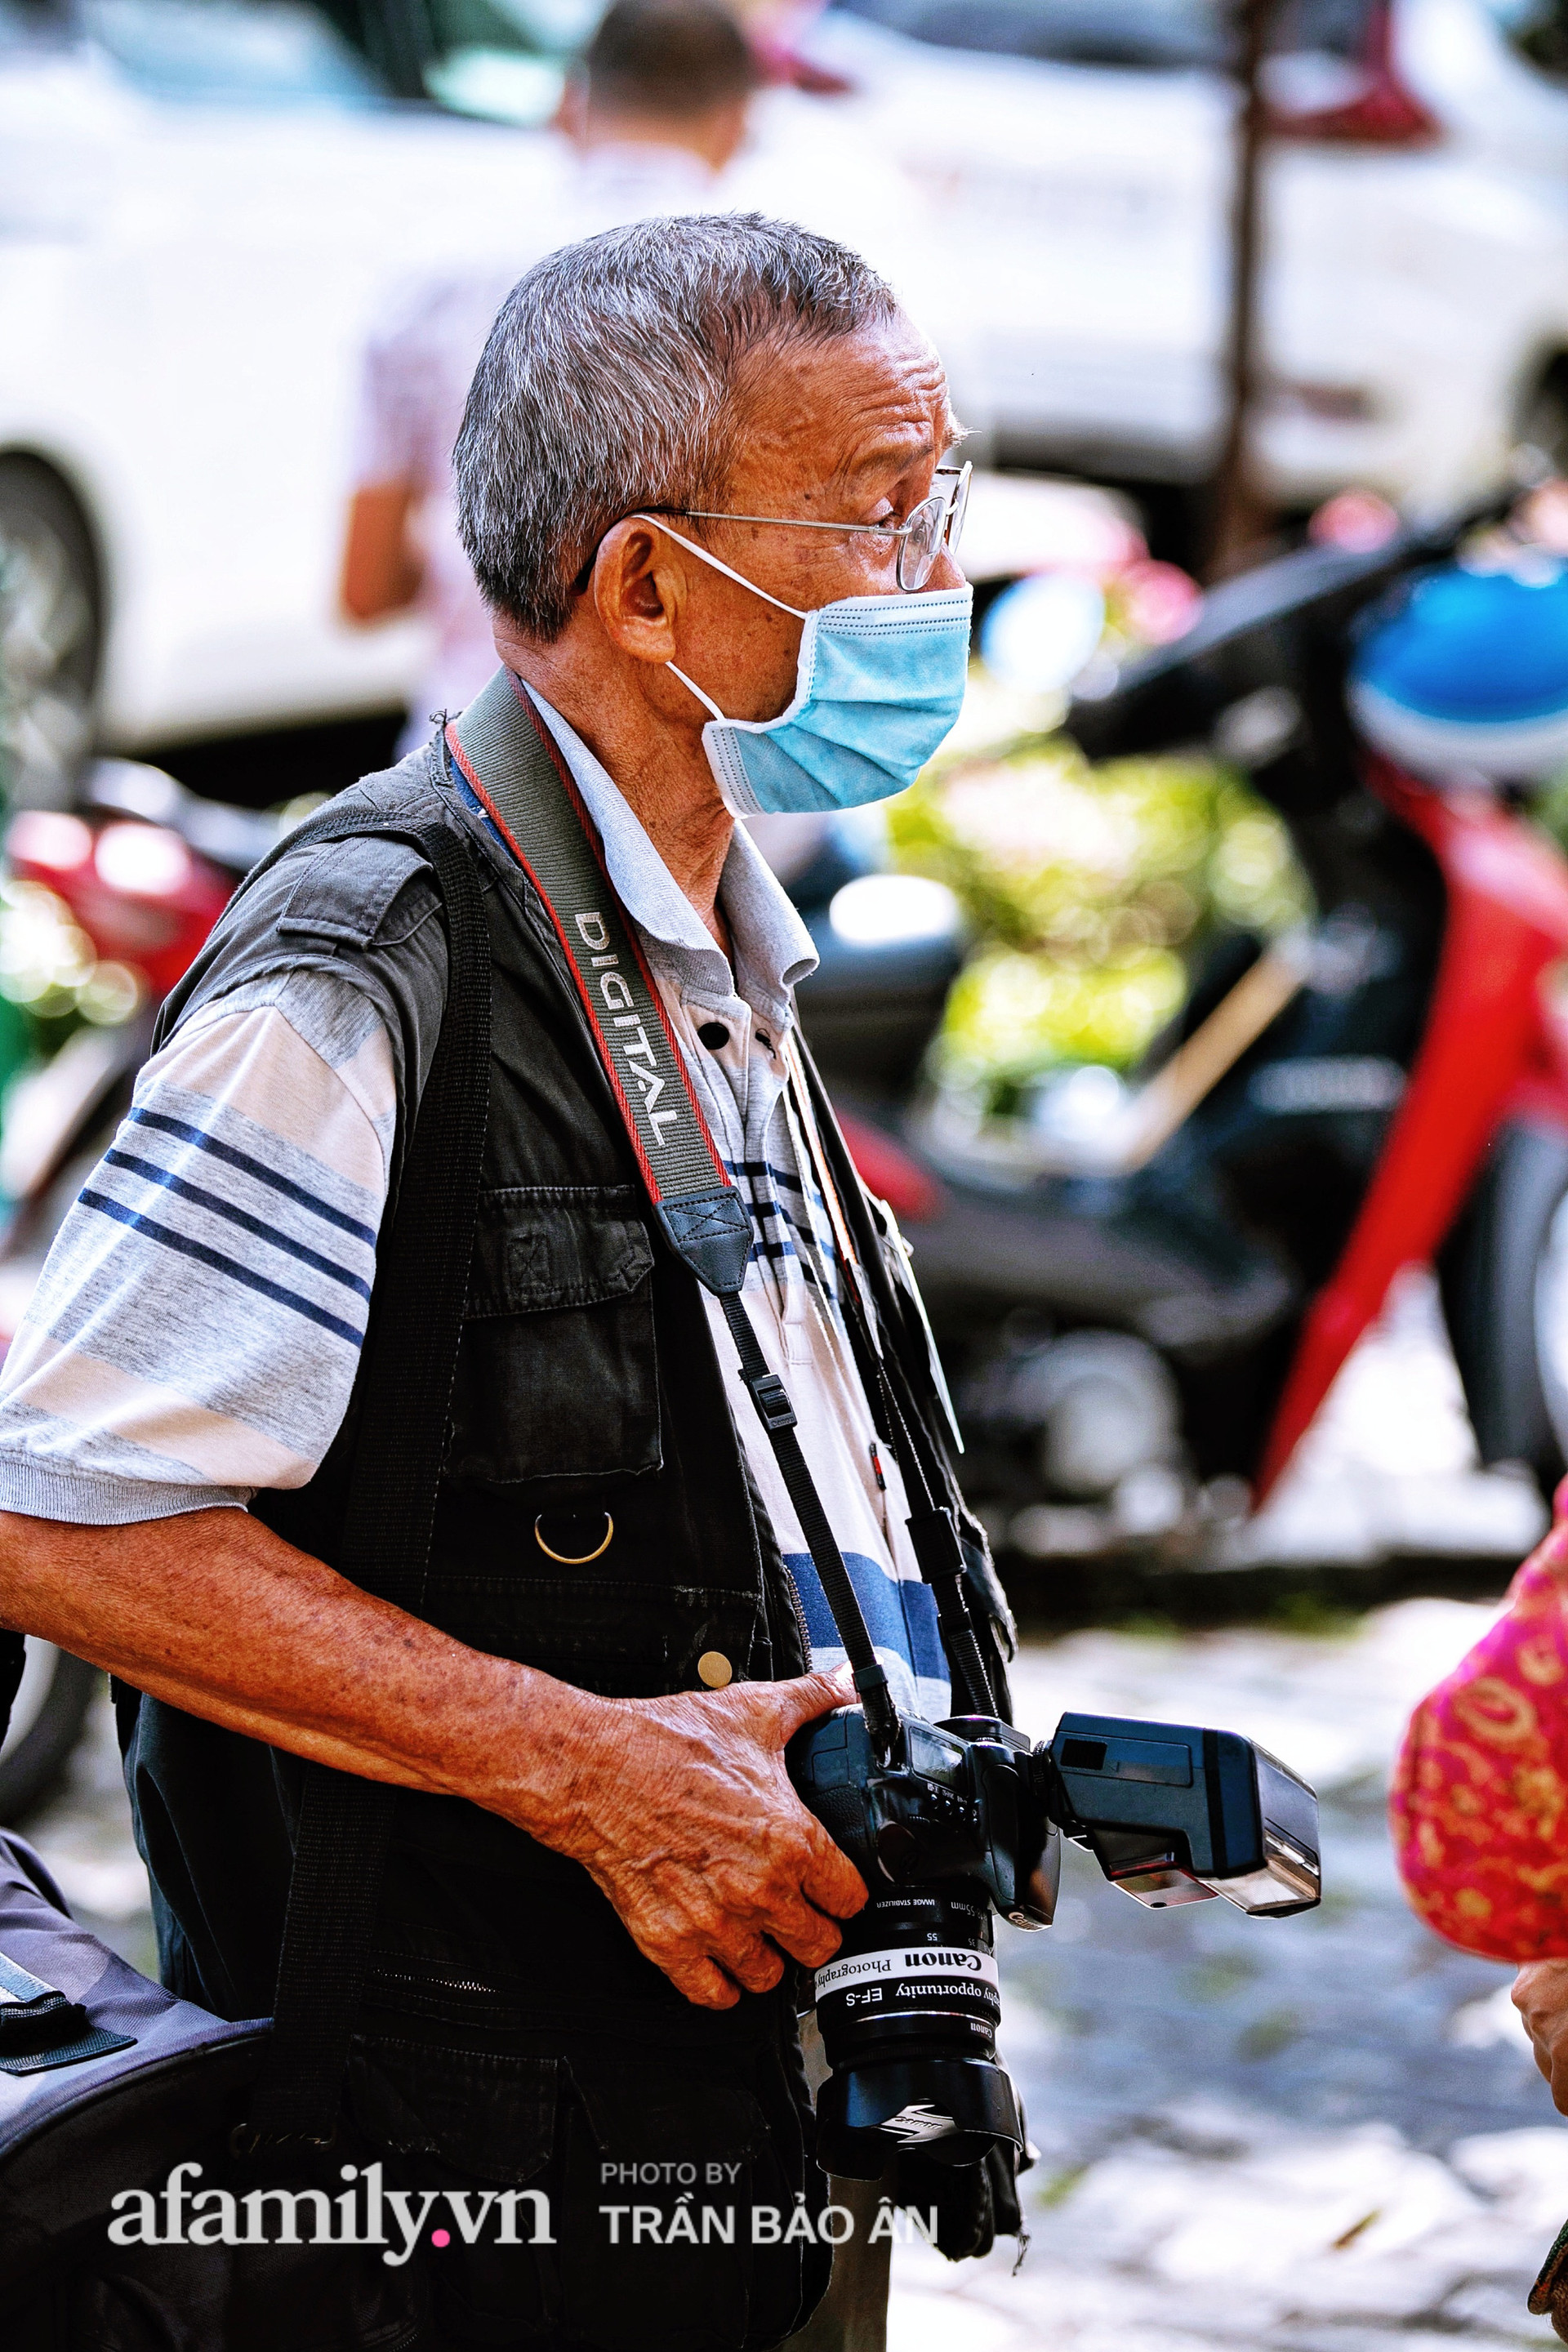  Ông thợ chụp hơn 30 năm đứng chờ ở Bưu điện TP lao đao vì Sài Gòn vào dịch, chạnh lòng 20 nghìn một bức ảnh kỳ công cũng không bằng cái nút trên điện thoại  - Ảnh 3.